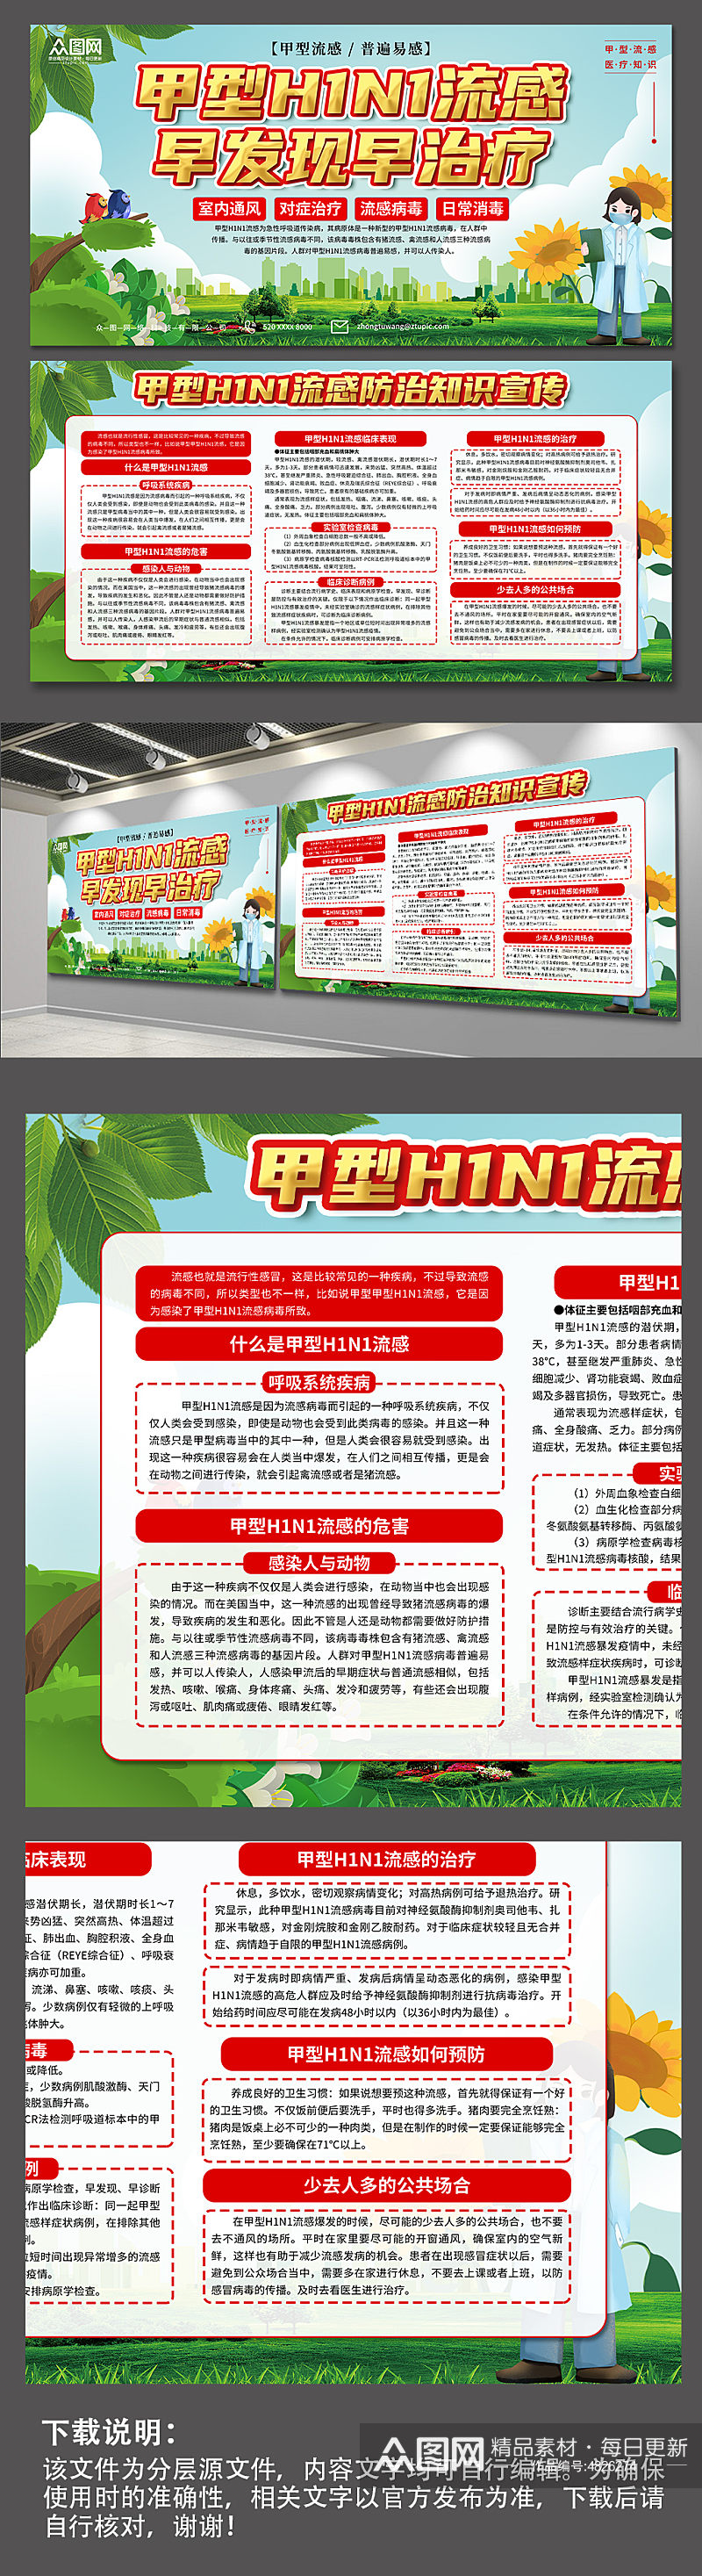 大气春季预防甲流甲型H1N1流感防治知识展板素材